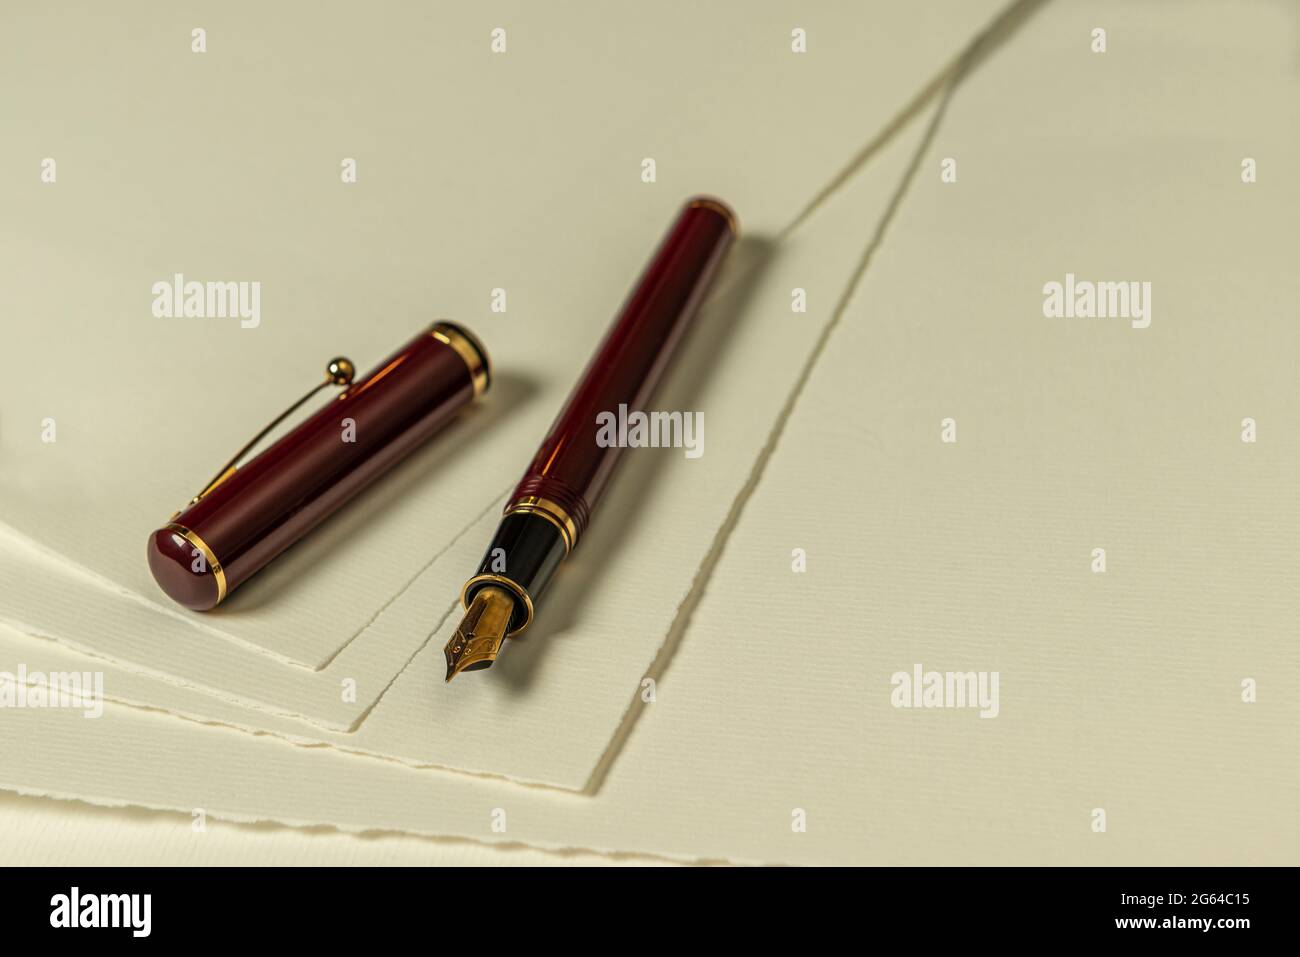 Penna stilografica rosso scuro con pennino d'oro e cappuccio sciolto su una serie di fogli di carta color crema come foto di sfondo Foto Stock